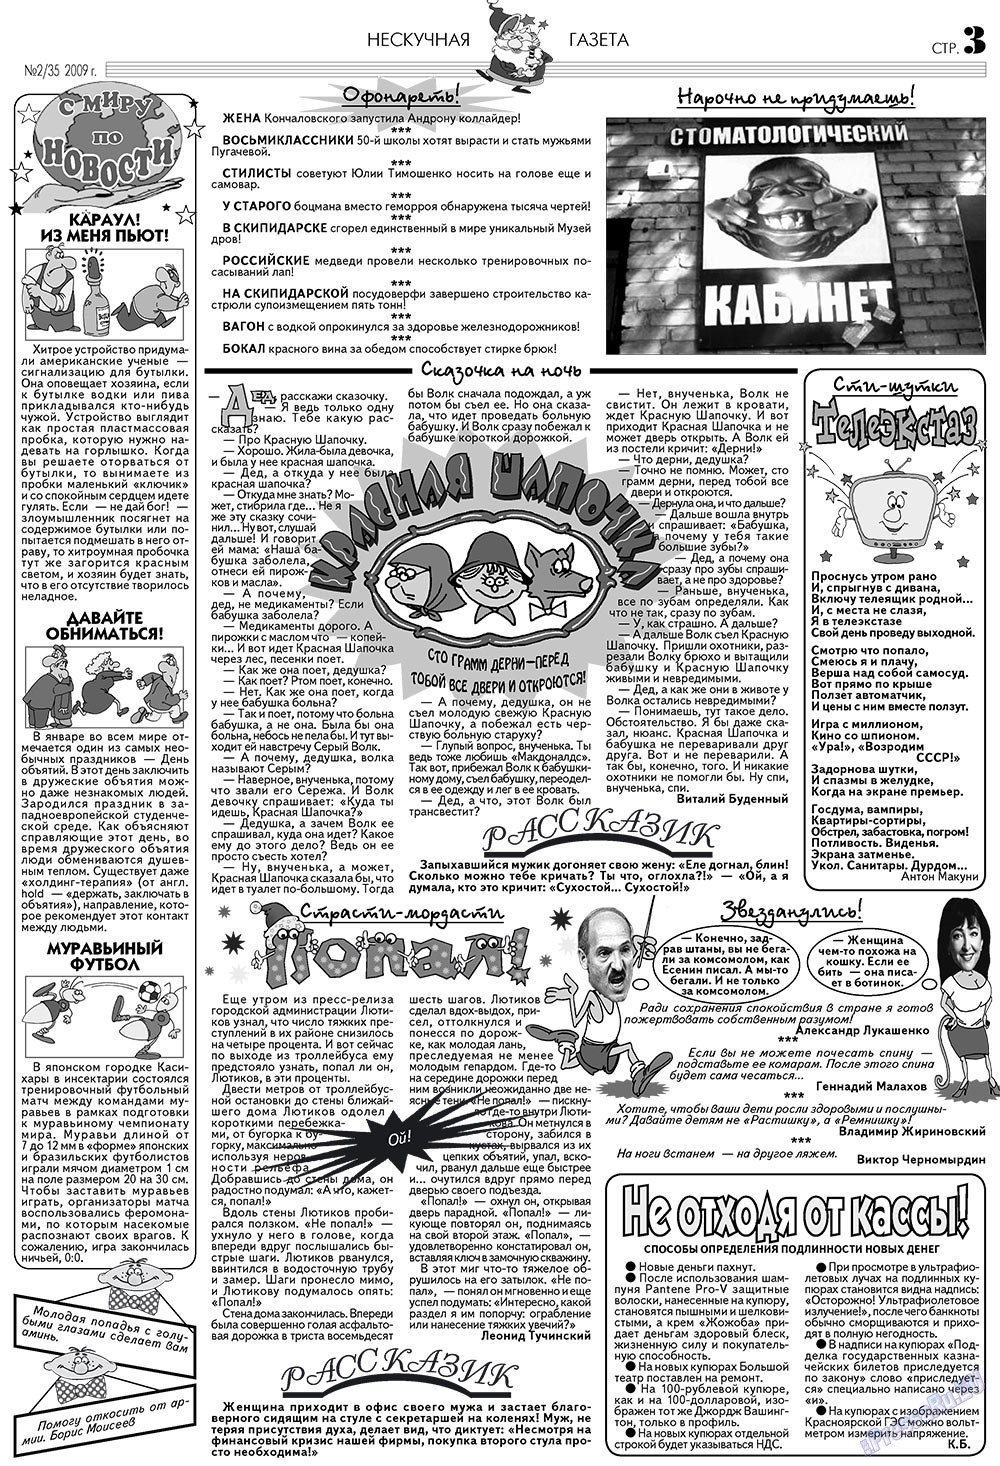 Нескучная газета (журнал). 2009 год, номер 2, стр. 3